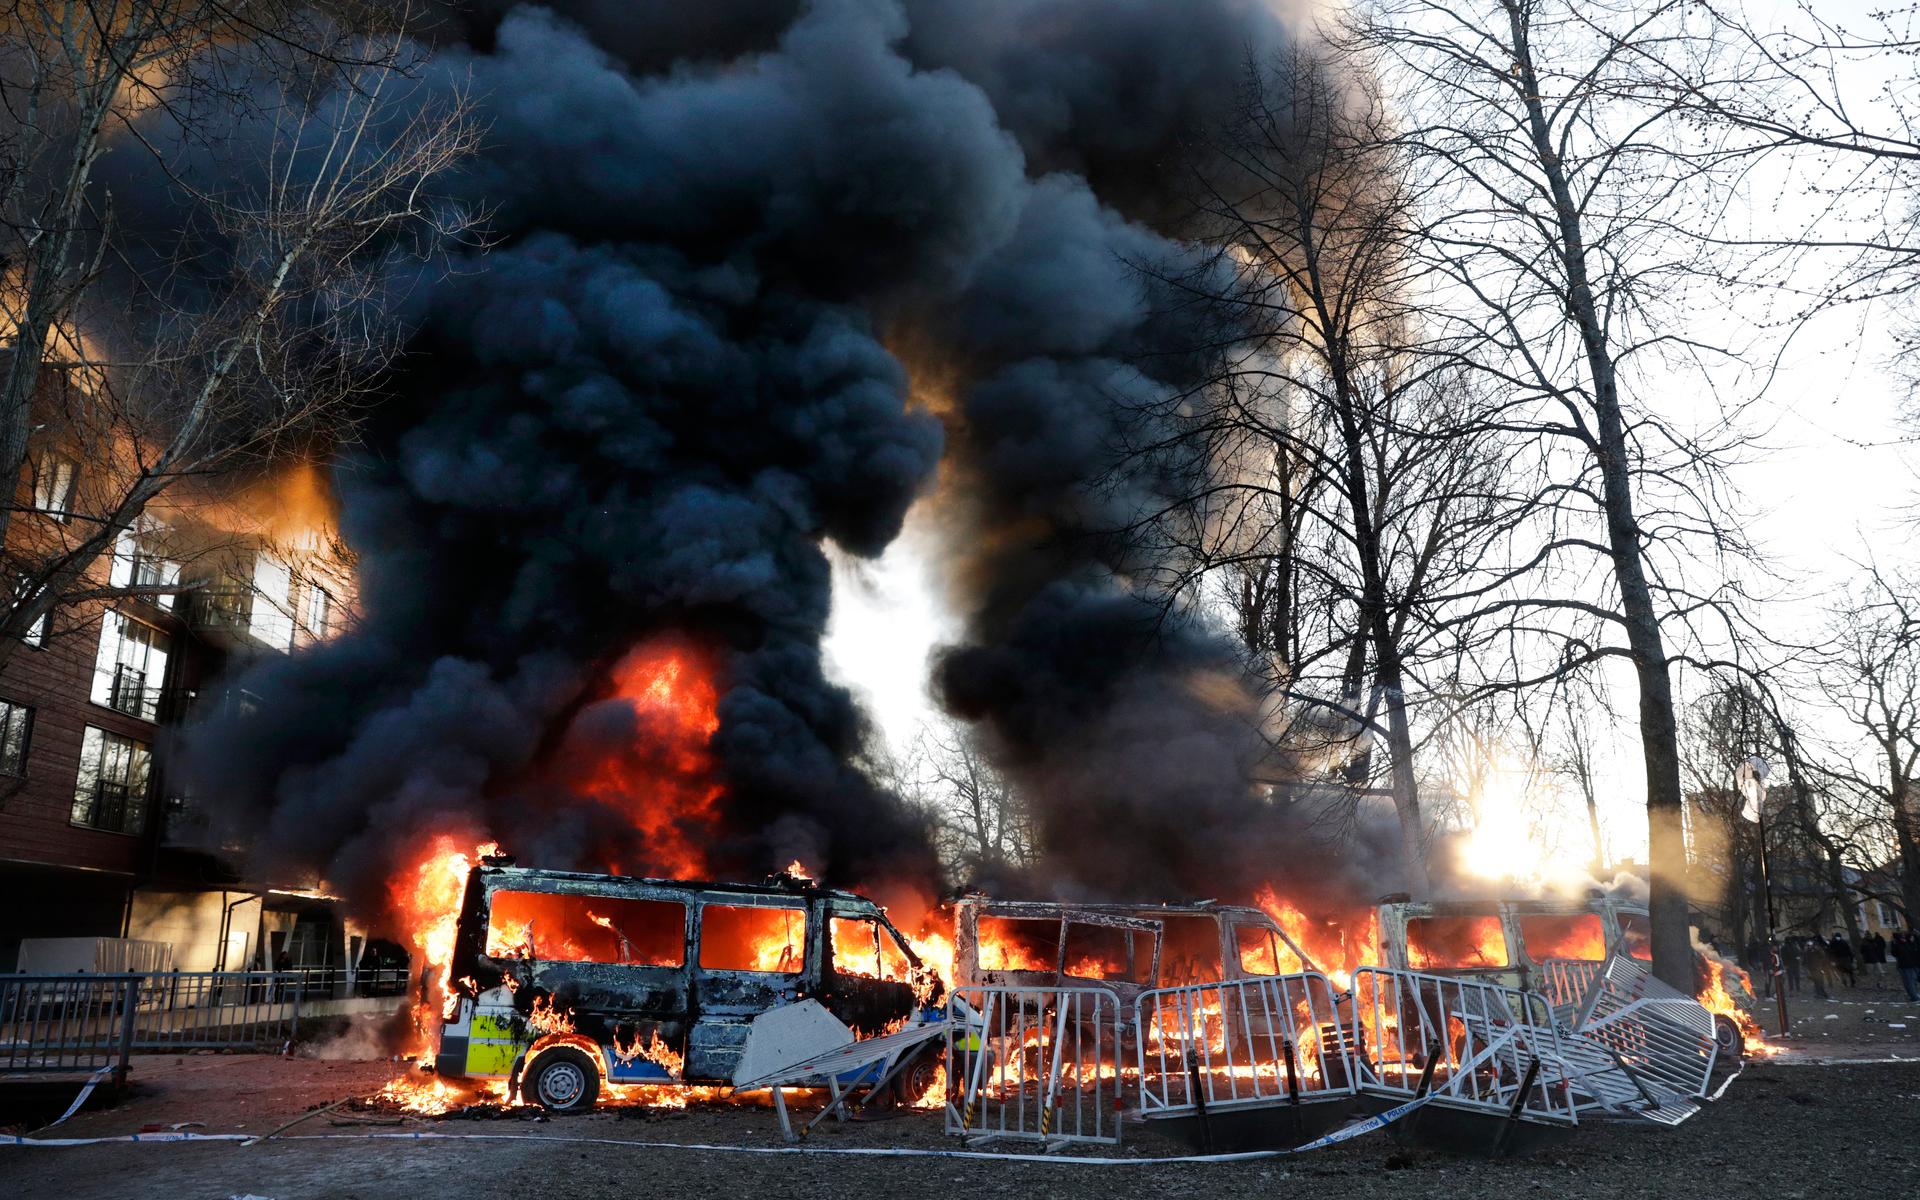 Motdemonstranter har satt eld på tre polisbussar i Sveaparken i Örebro, där Rasmus Paludan, partiledare för det danska högerextrema partiet Stram kurs, har fått tillstånd för en sammankomst på långfredagen. 